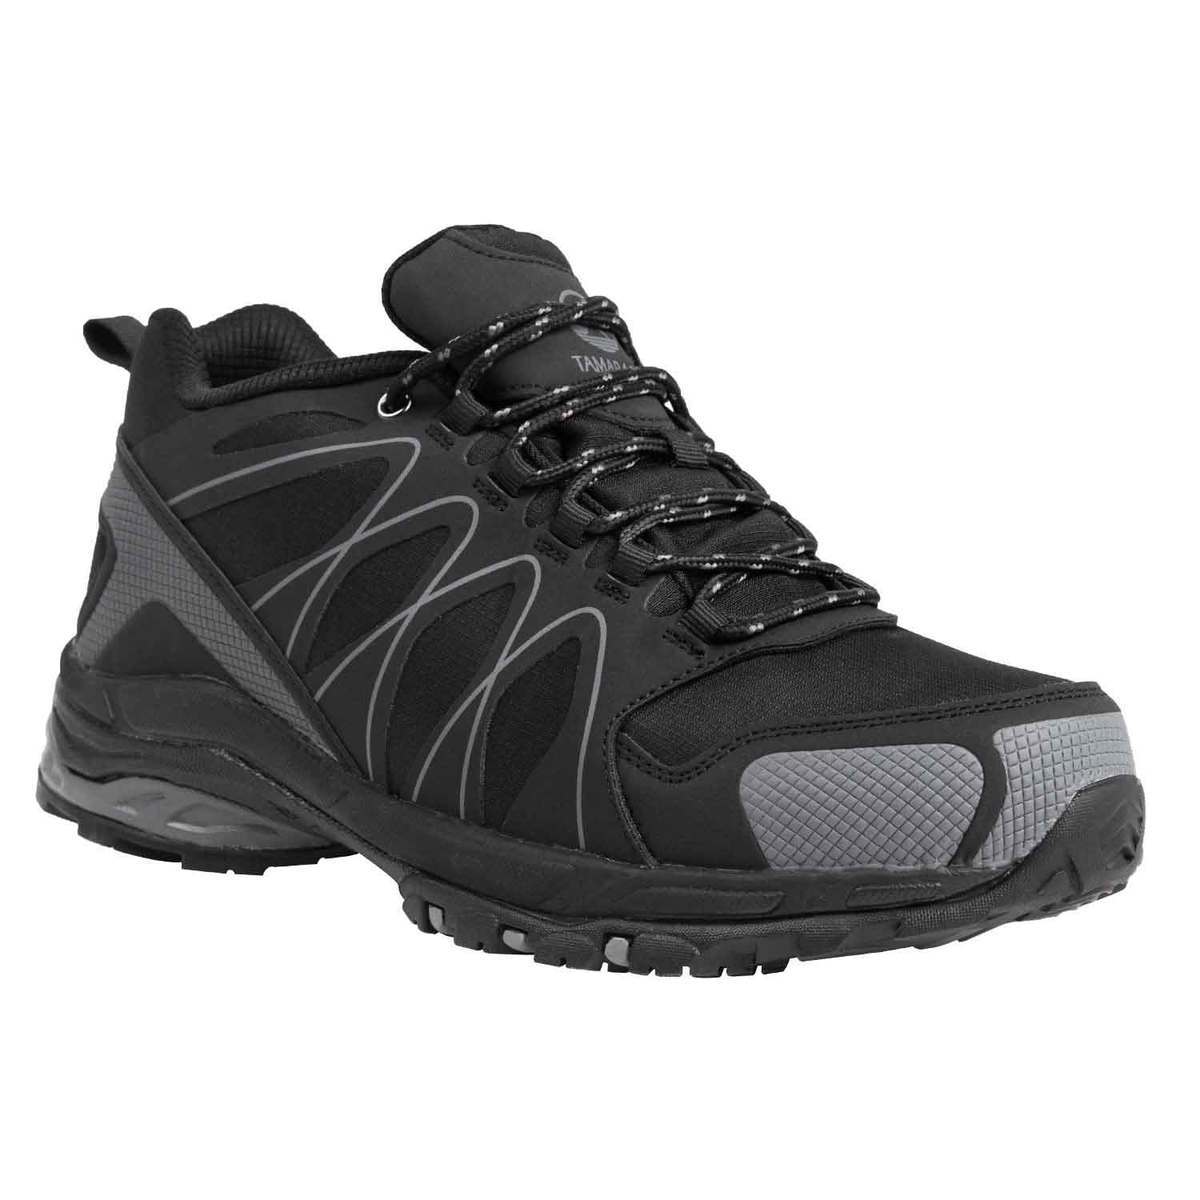 Tamarack Men's Dakato Mid Hiking Boots - Black - Size 10.5 - Black 10.5 ...